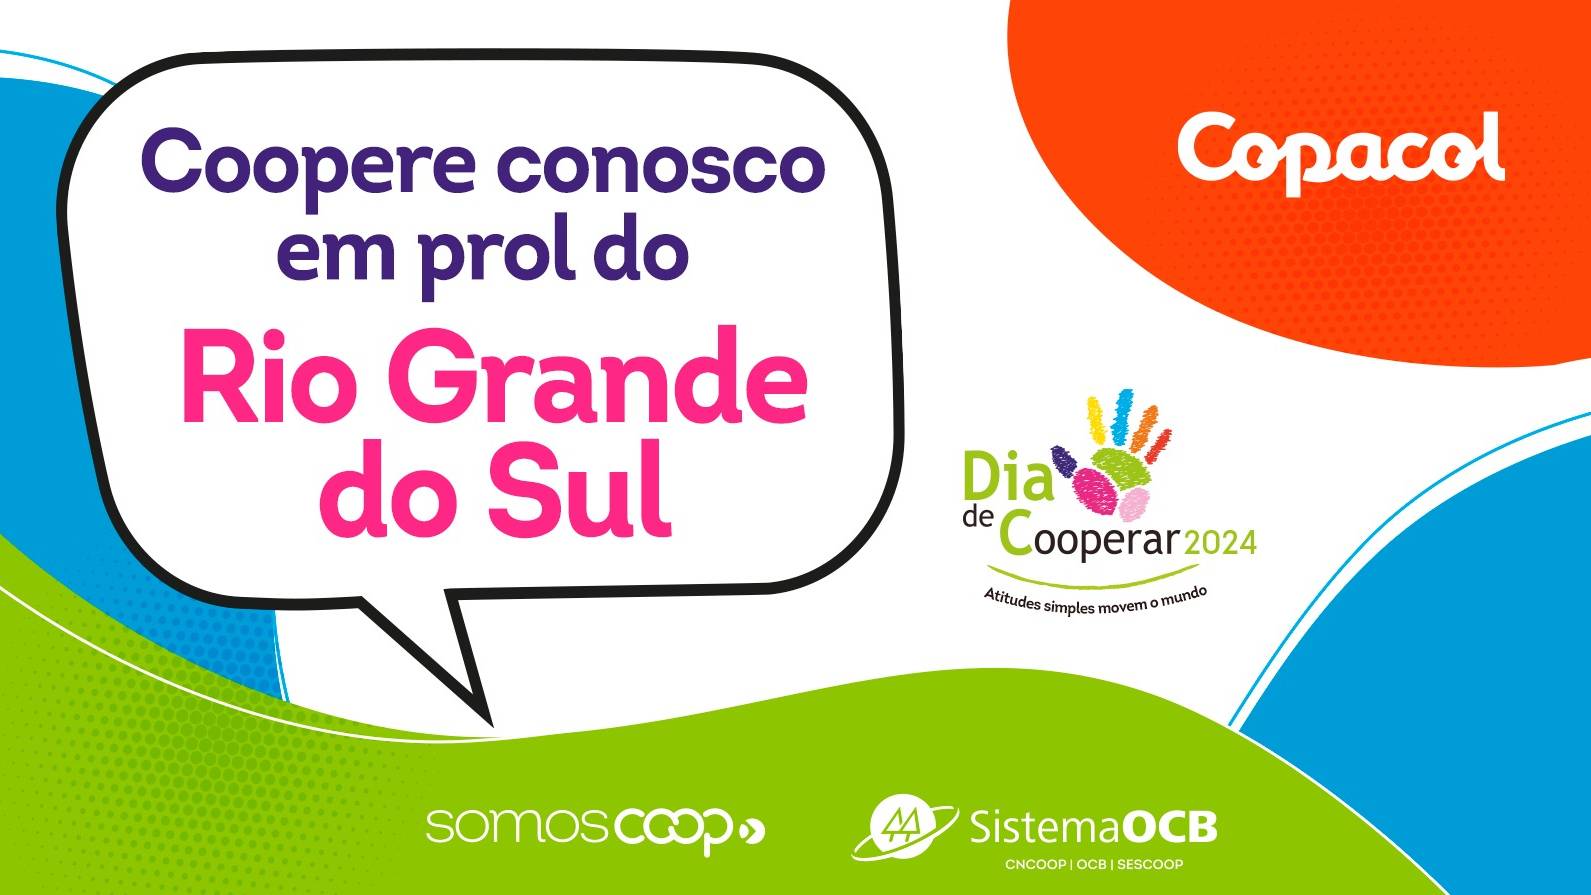 Copacol mobiliza cooperados, colaboradores e comunidade no Dia C para ajudar gaúchos